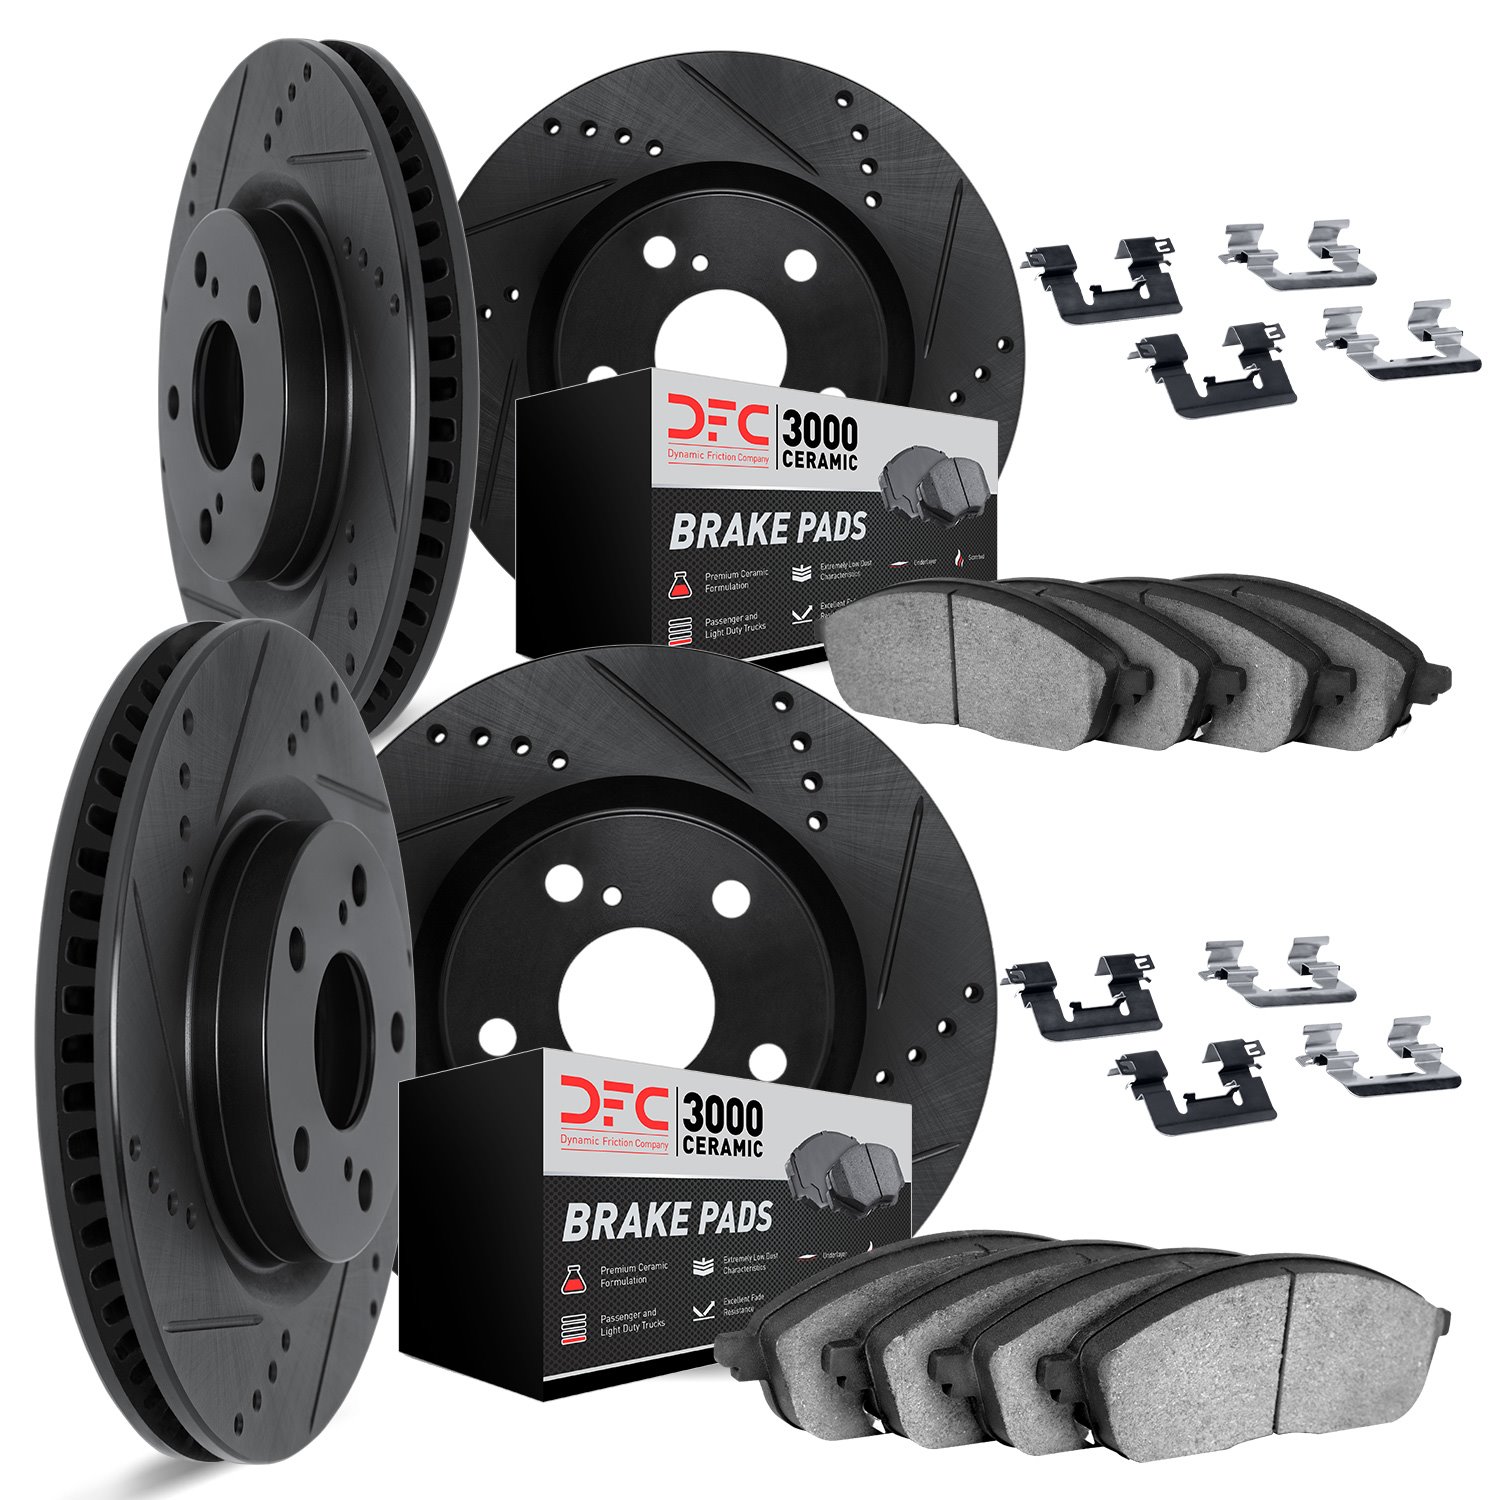 8314-72047 Drilled/Slotted Brake Rotors with 3000-Series Ceramic Brake Pads Kit & Hardware [Black], 2008-2015 Mitsubishi, Positi